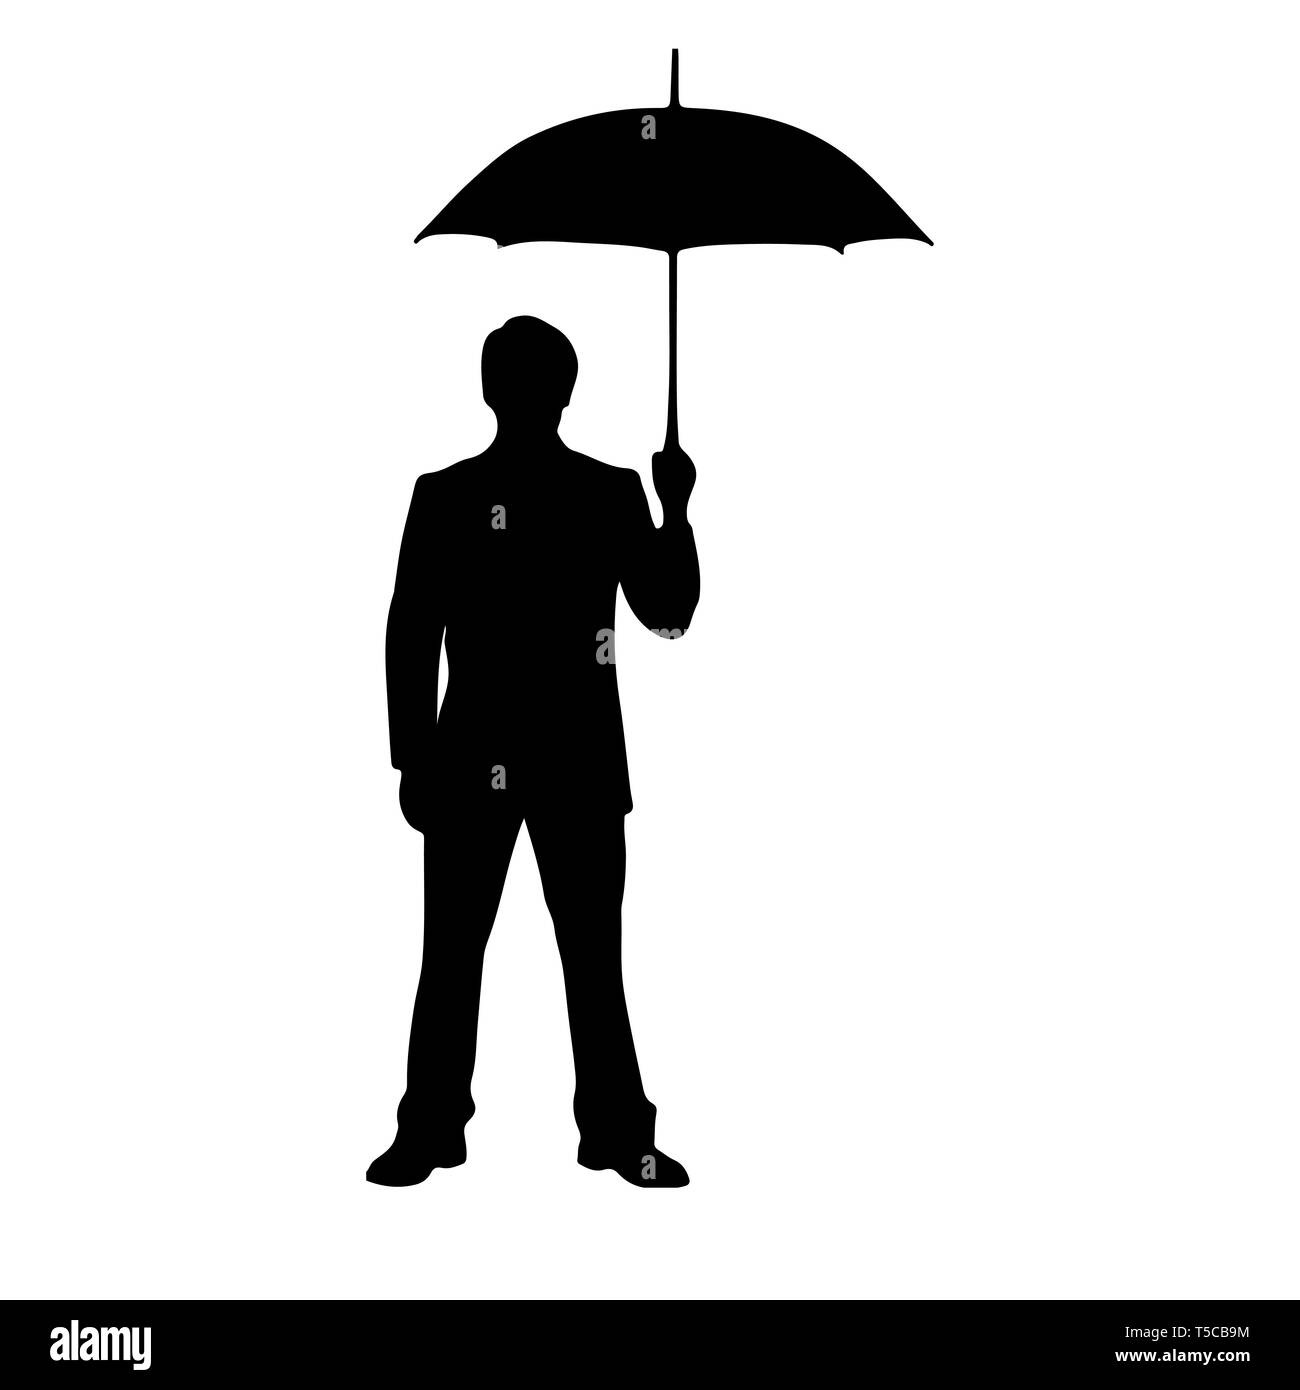 Sagoma uomo con ombrello Immagini Vettoriali Stock - Pagina 2 - Alamy